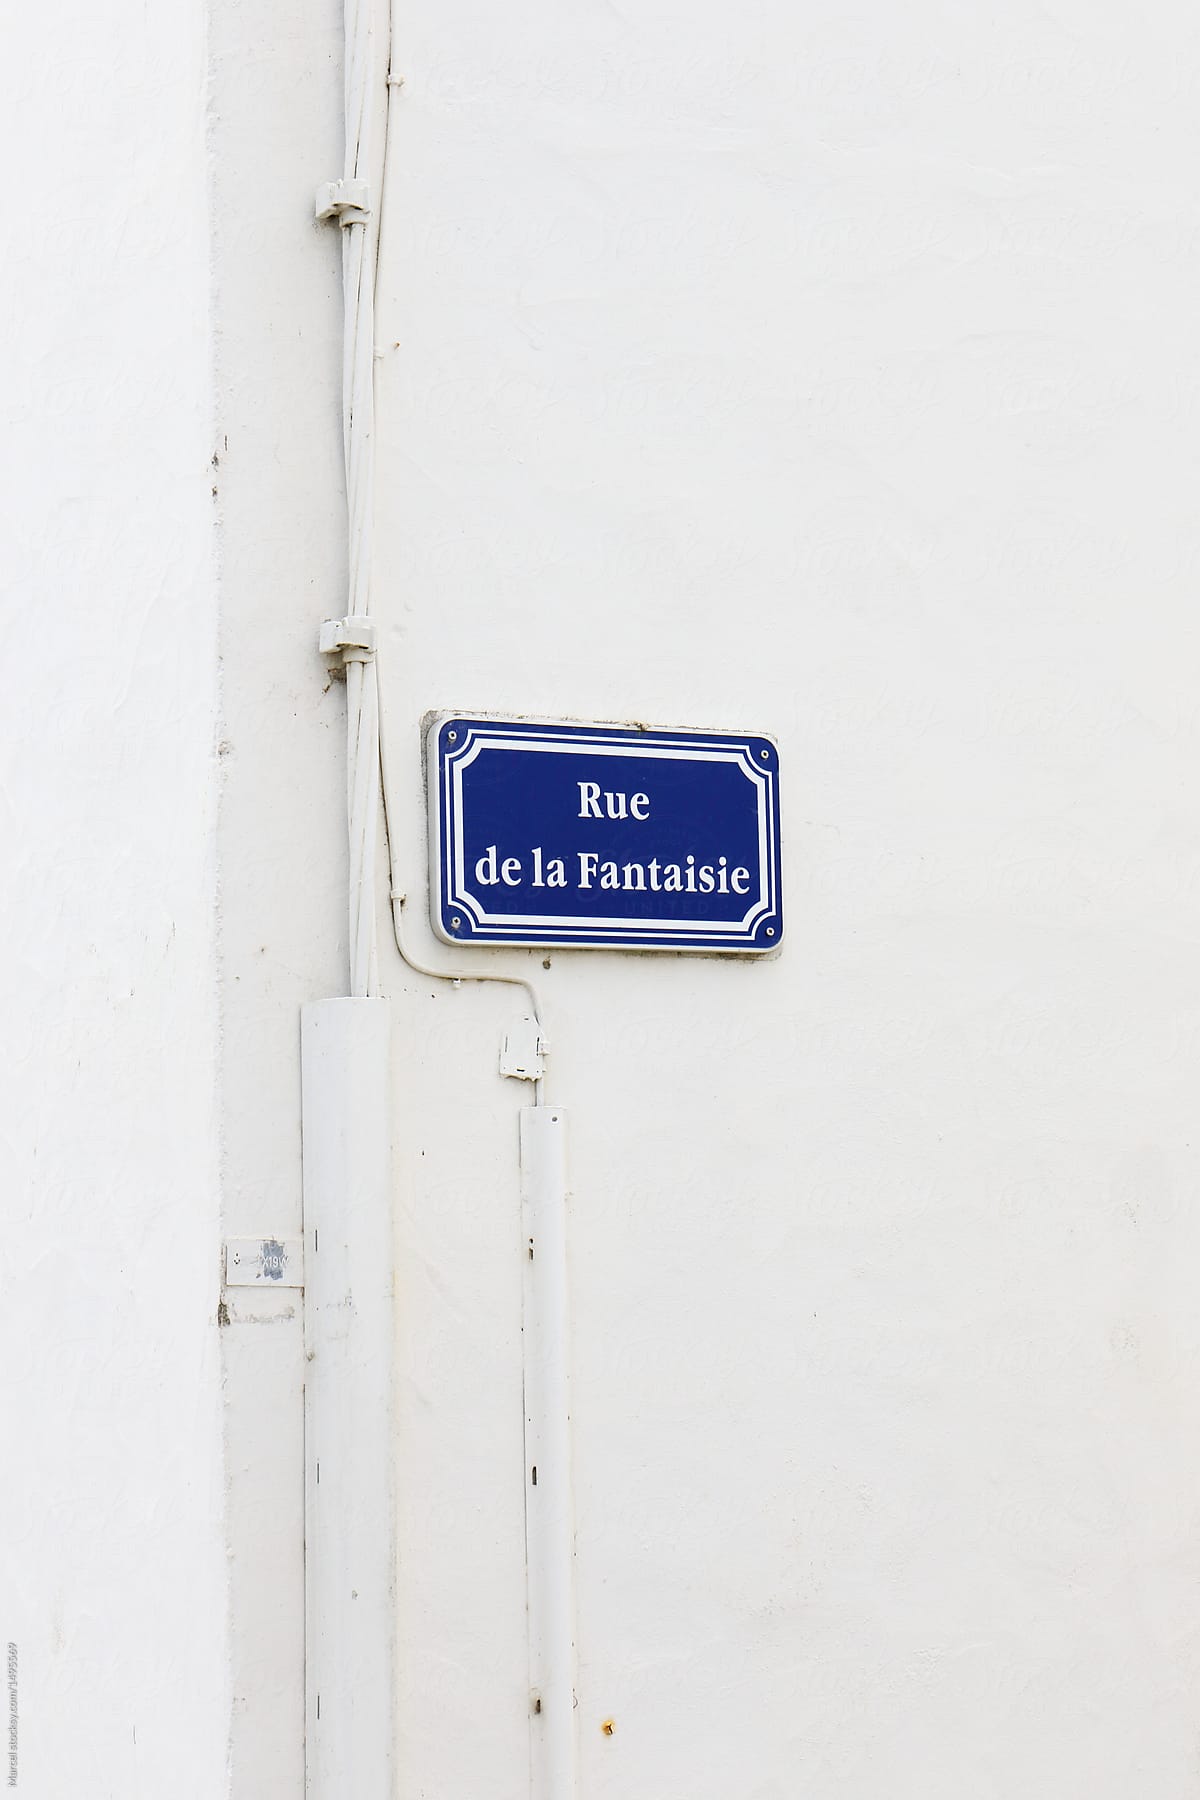 Rue de la fantaisie